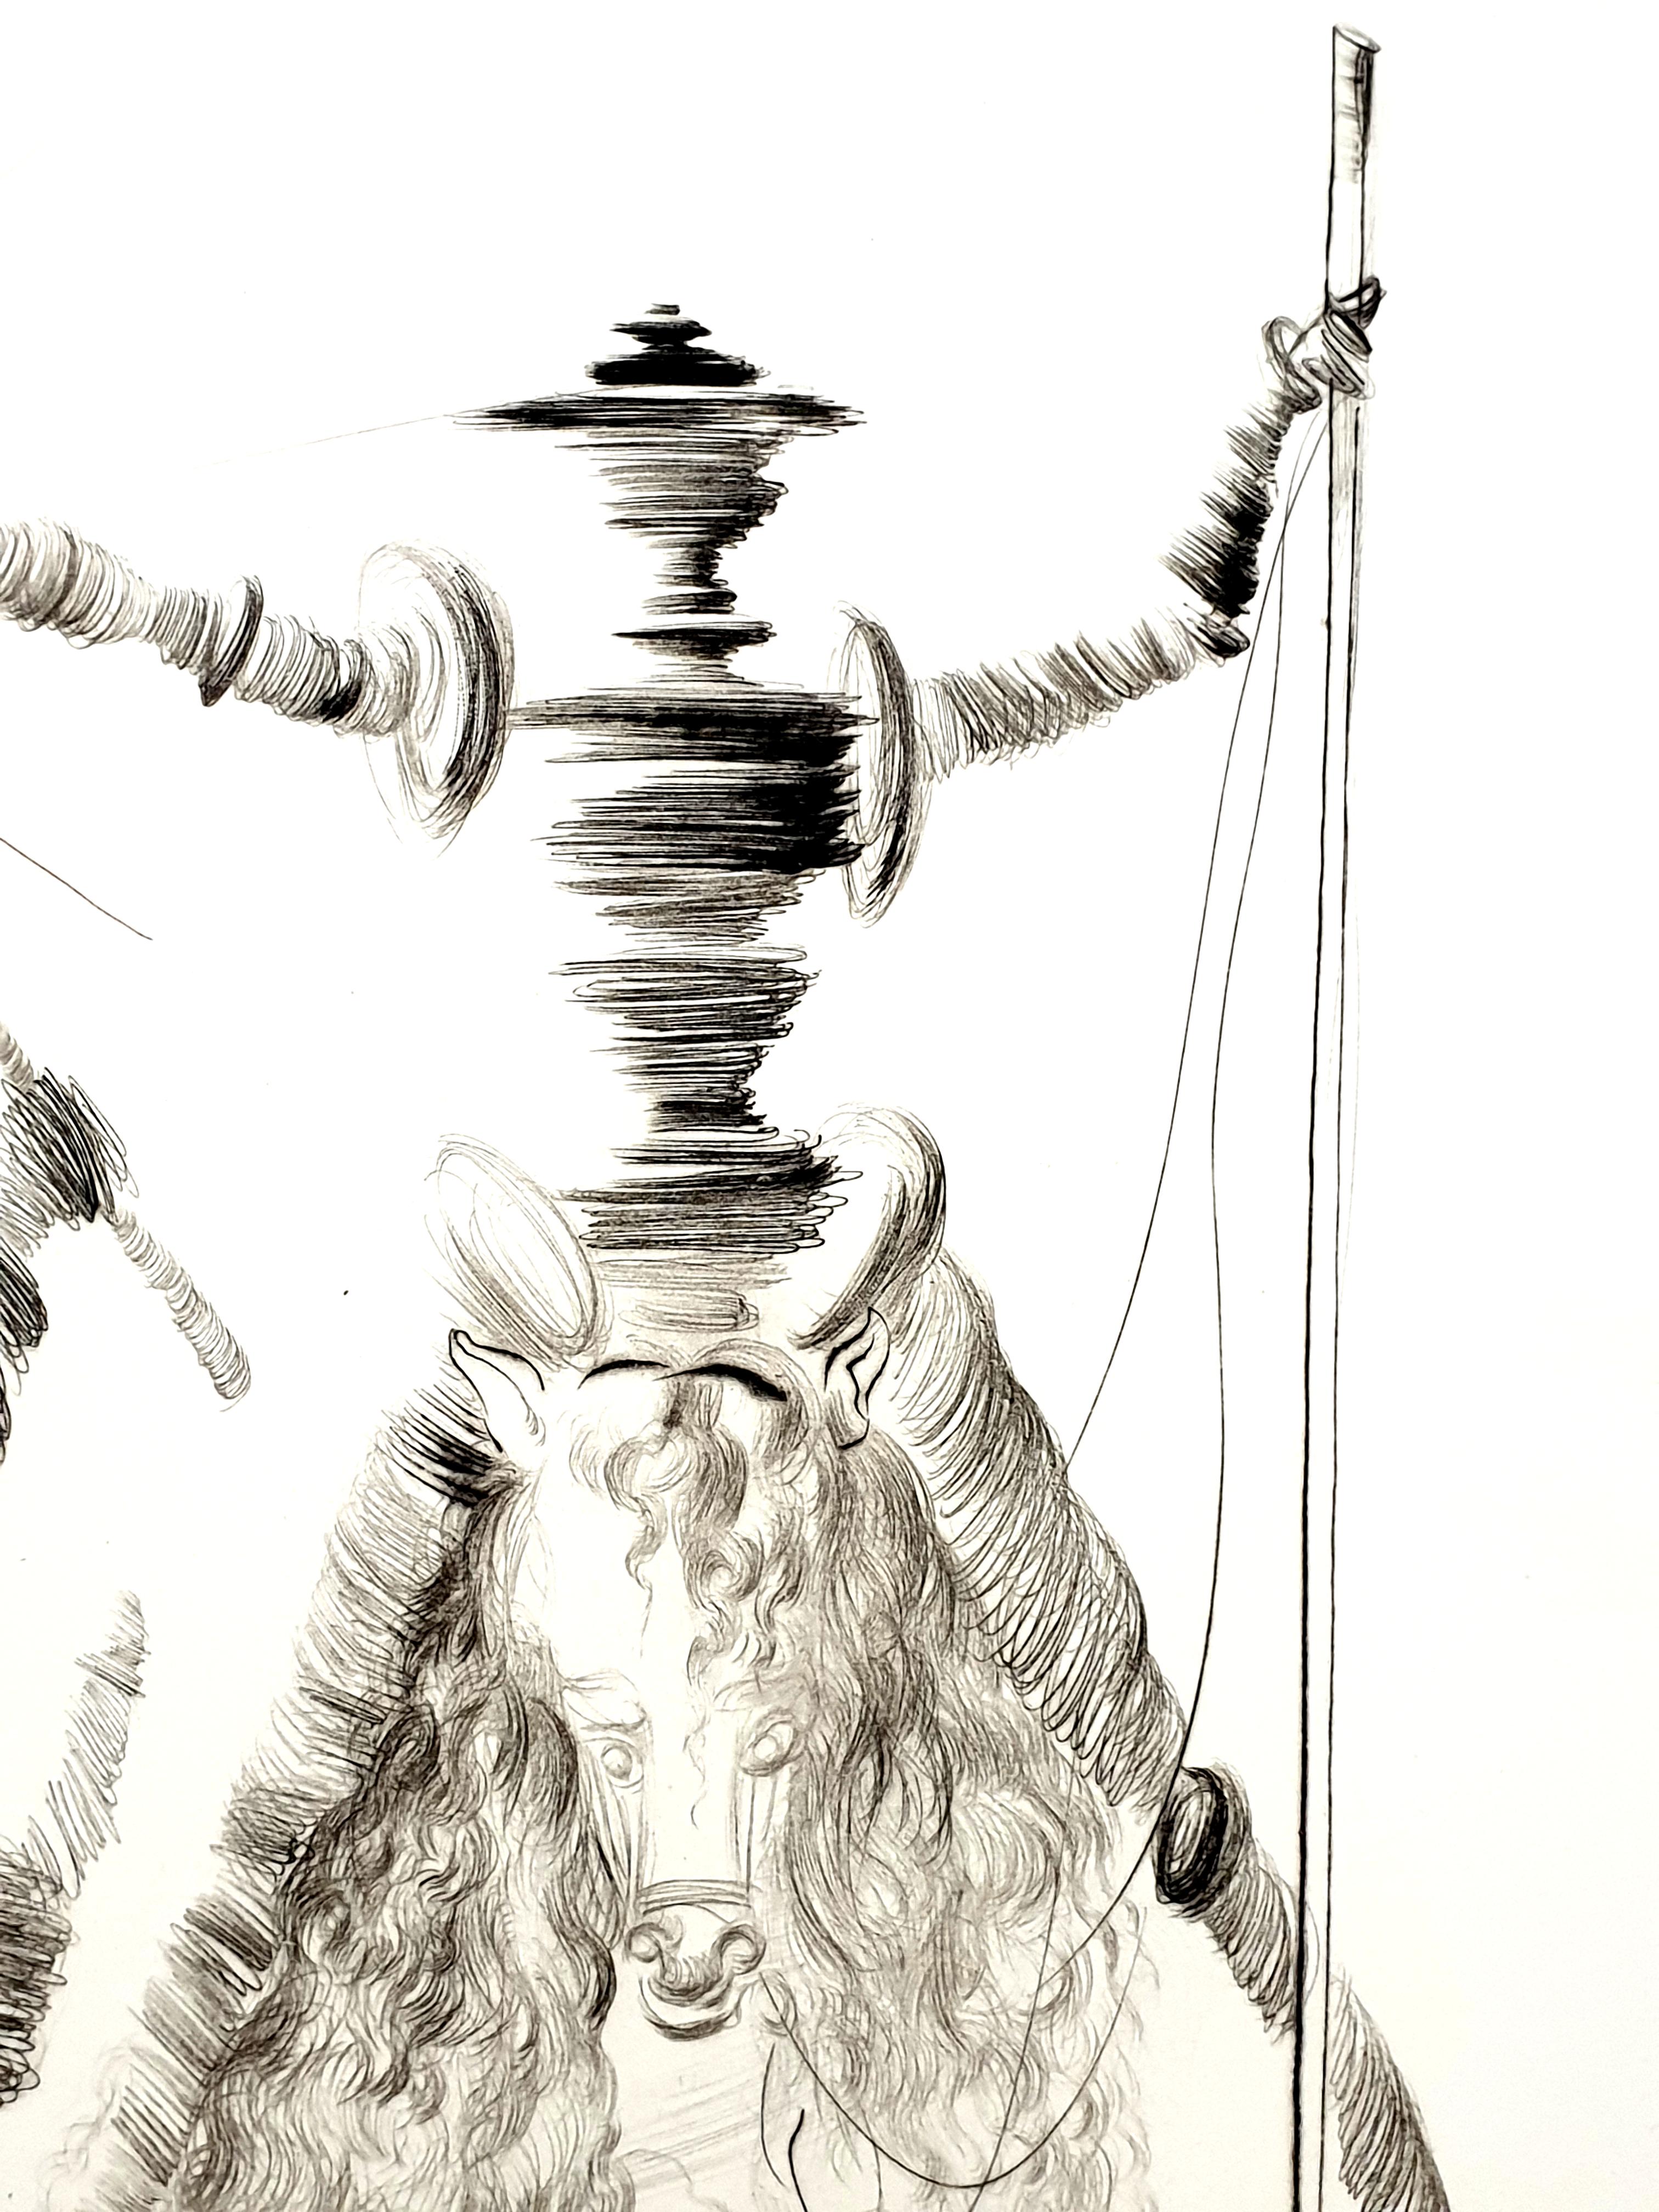 Gravure originale rare de Salvador Dali
Titre : Don Quichotte et Sancho
Signé 
Dimensions : 76 x 56 cm
Edition de 200 exemplaires sur l'Auvergne
1980
Références : Champ 68-1 / Michler & Lopsinger 266